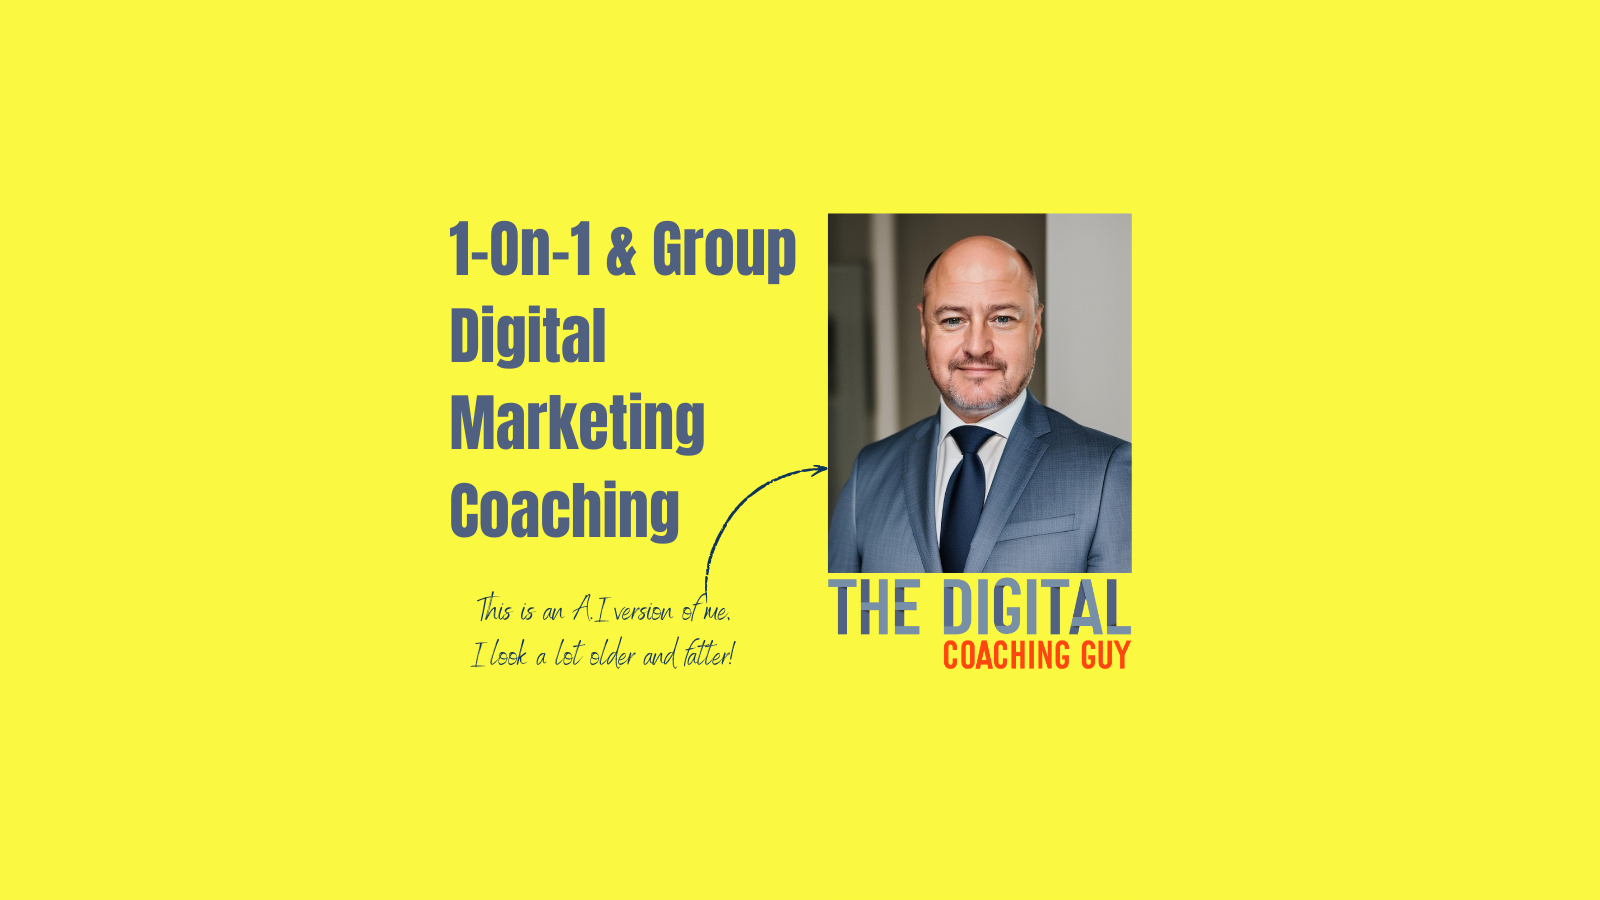 The Digital Coaching Guy